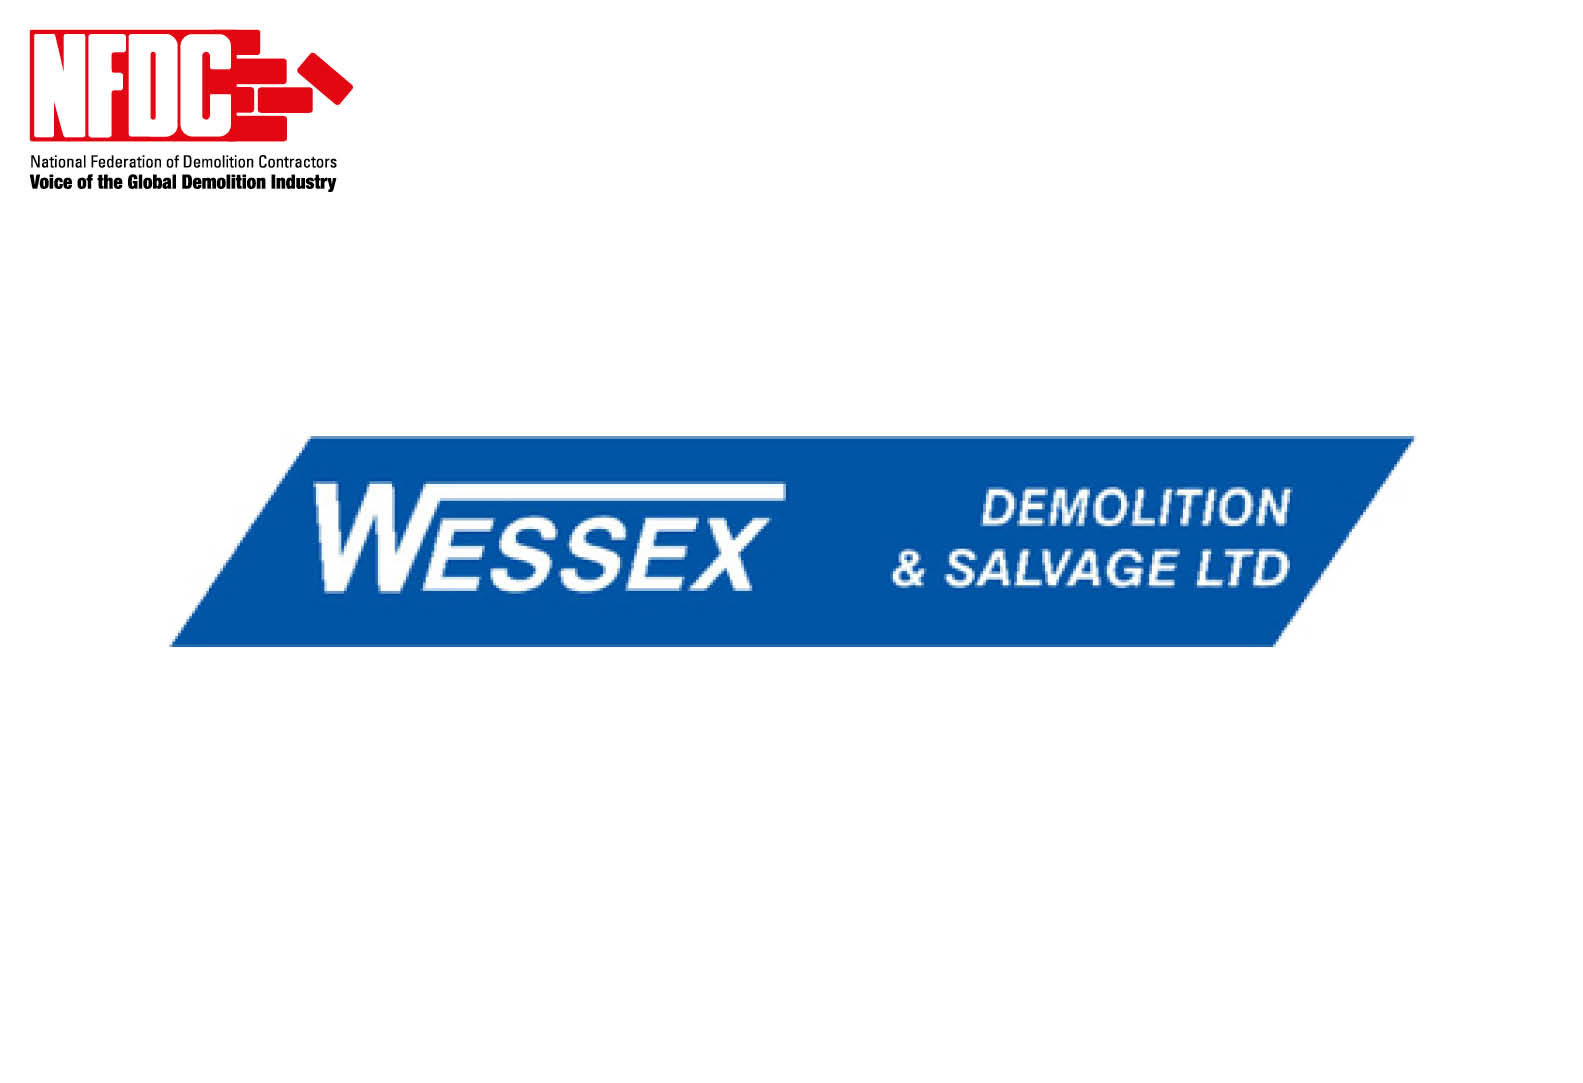 Wessex Demolition